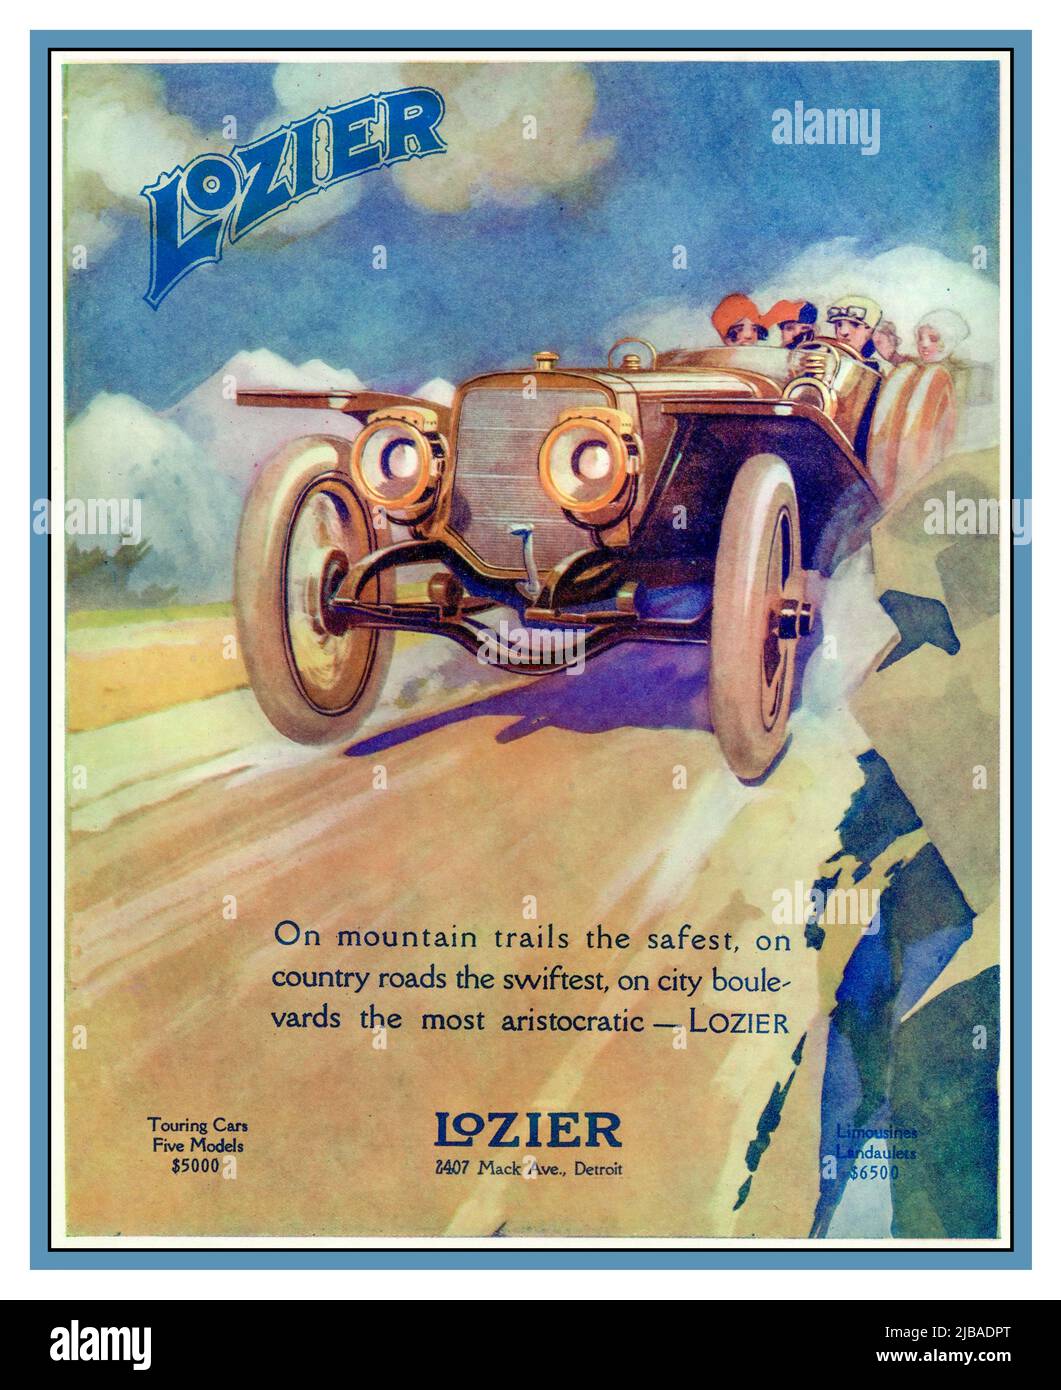 LOZIER Vintage des années 1900 affiche publicitaire pour Lozier une voiture de luxe américaine de tourisme ouvert à partir de 5000 $ Mack Avenue Detroit USA les Loziers étaient des voitures de luxe et pendant un certain temps étaient les voitures les plus chères produites aux États-Unis. La gamme de modèles 1910 comportait des voitures dont le prix se situait entre 4 600 $ et 7 750 $ (équivalant à 253 425 $ en 2023). La société a été transférée à Détroit en 1910. En 1911, un Lozier participe à la première course de l'Indianapolis 500. Banque D'Images